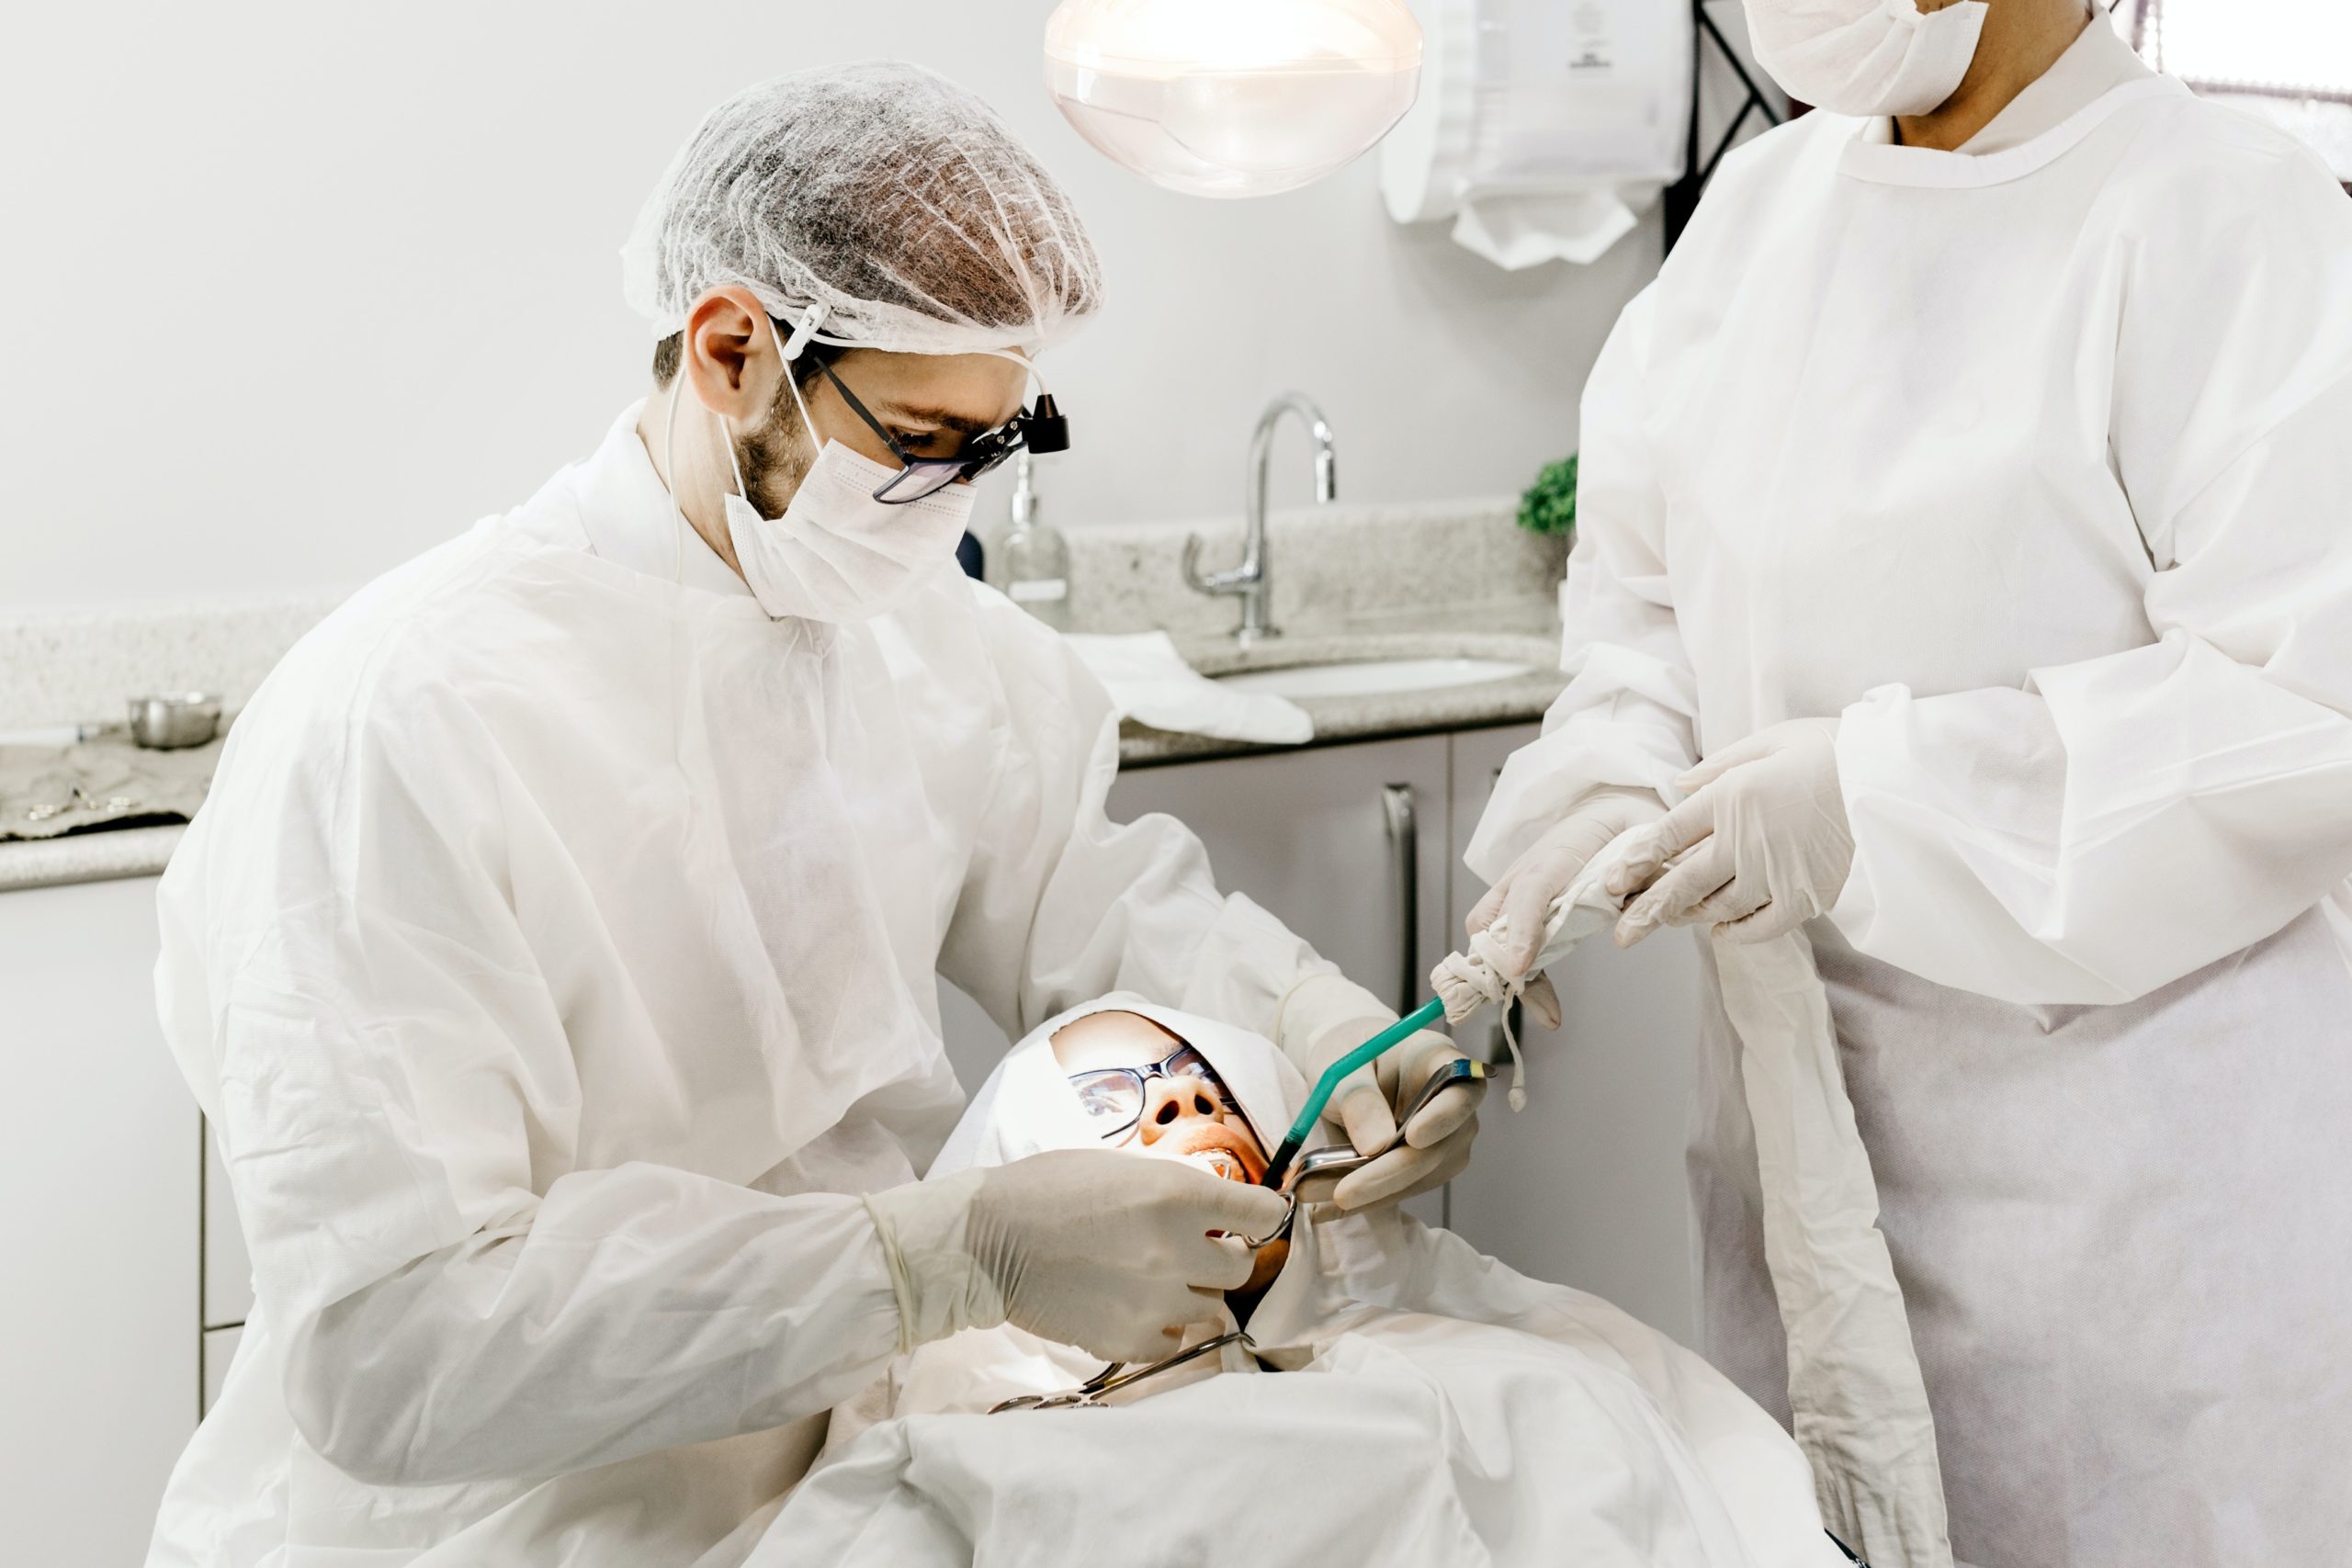 Dental hygienist looking at patients teeth